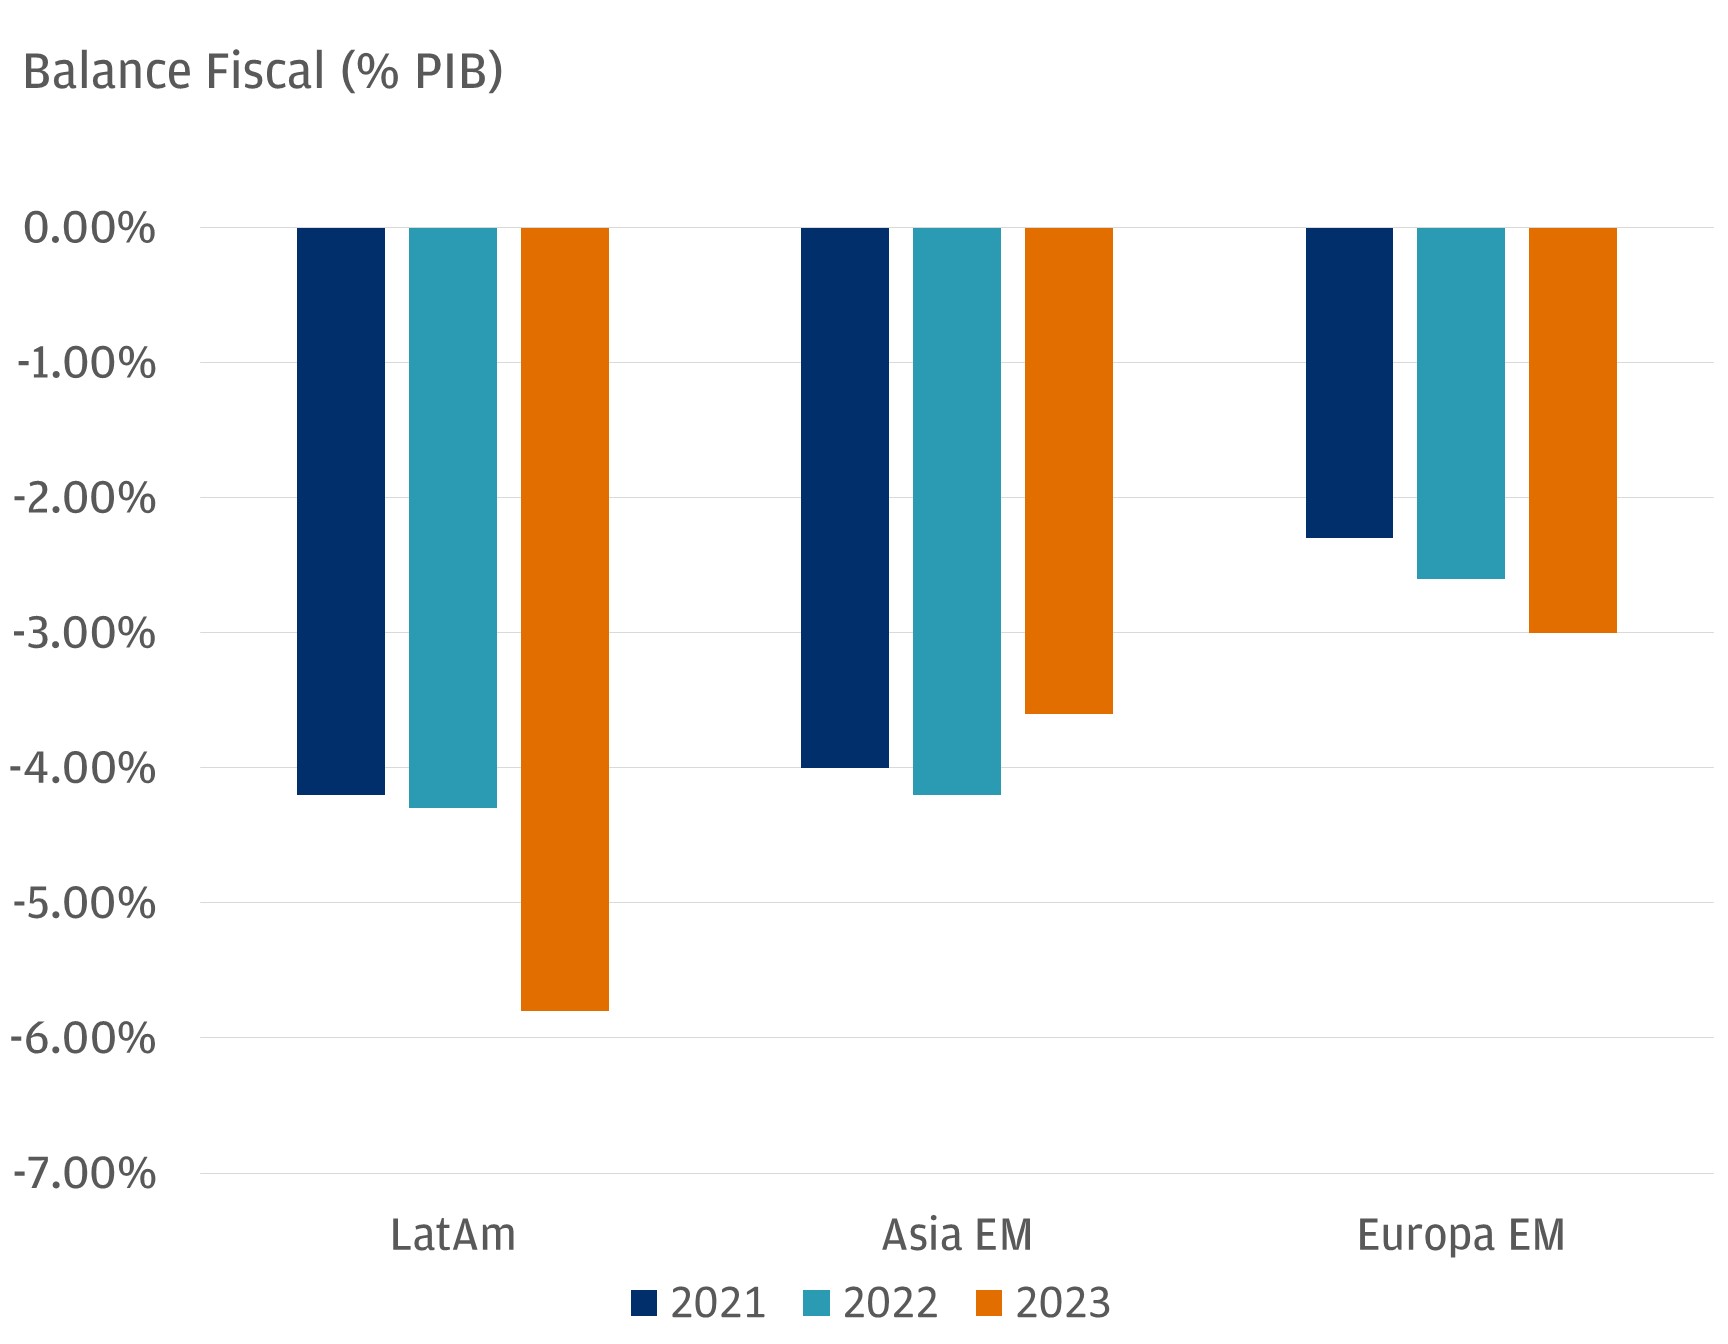 Este gráfico describe el balance fiscal anual, en términos de porcentaje, de tres regiones: América Latina EM, Asia EM y Europa EM, para los años 2021, 2022 y 2023.